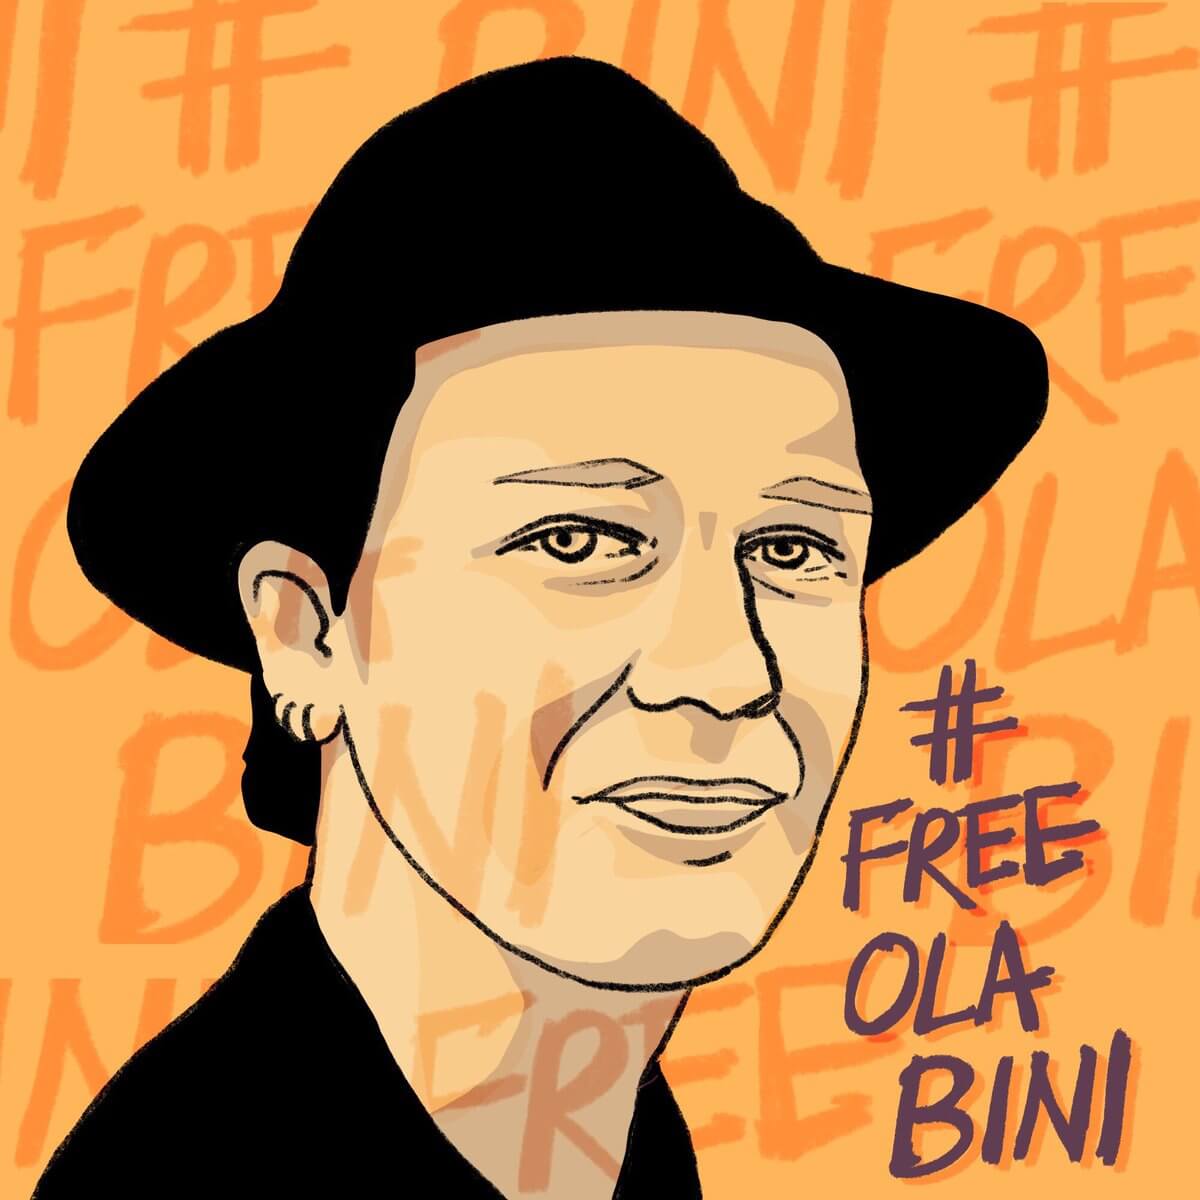 About Ola Bini